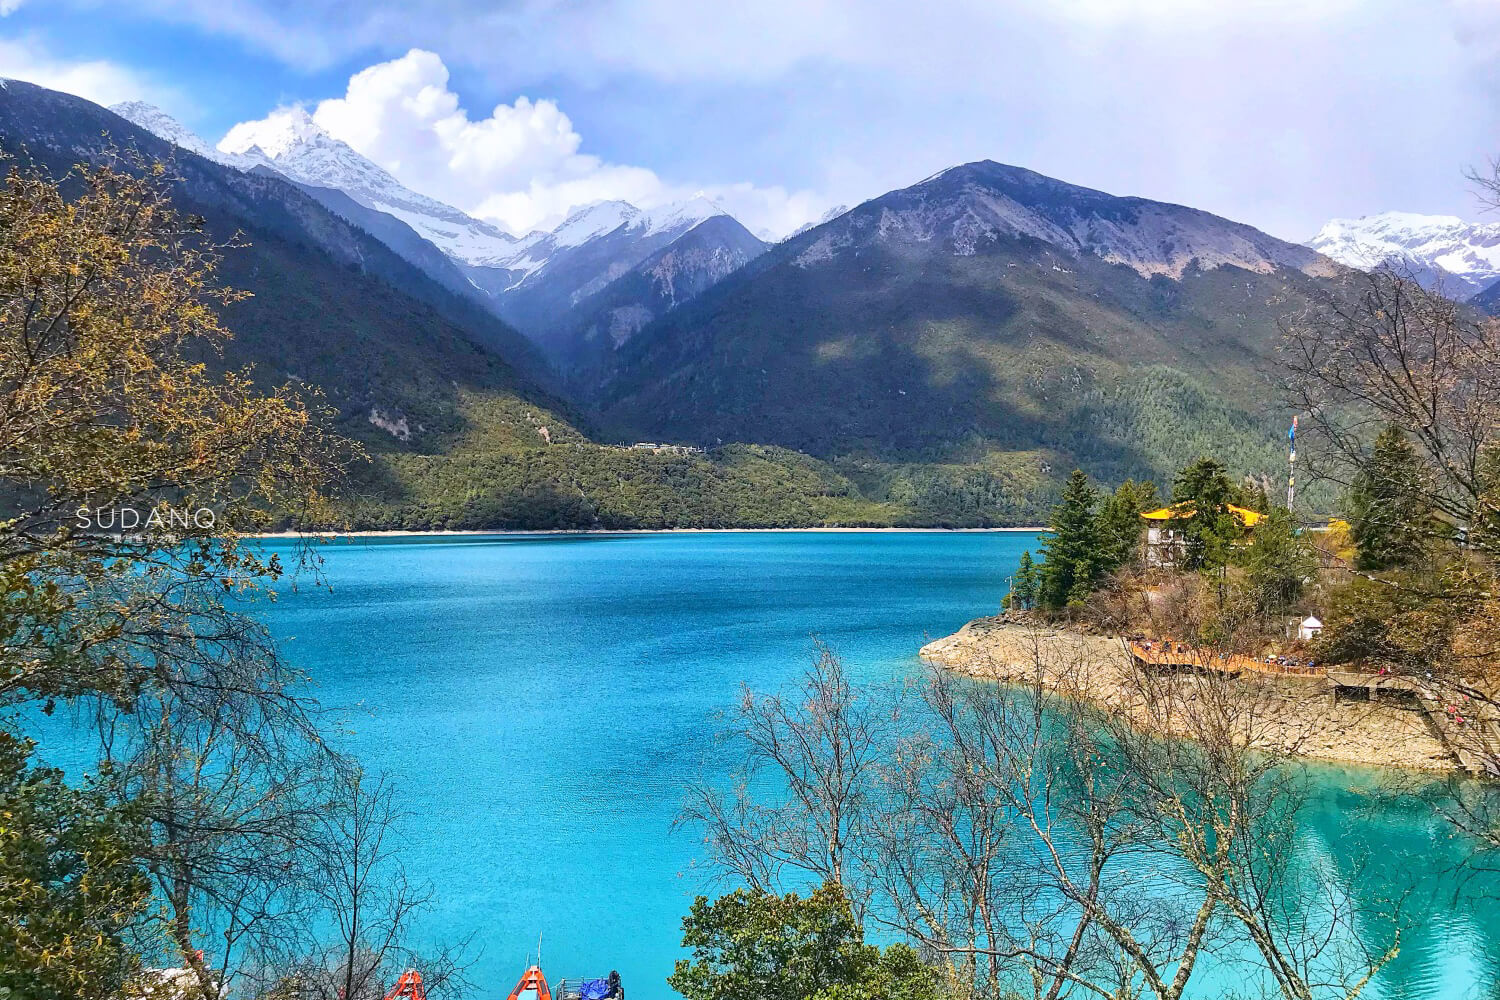 它是西藏海拔最低大湖，雪山桃花美不胜收，有“小瑞士”之美誉